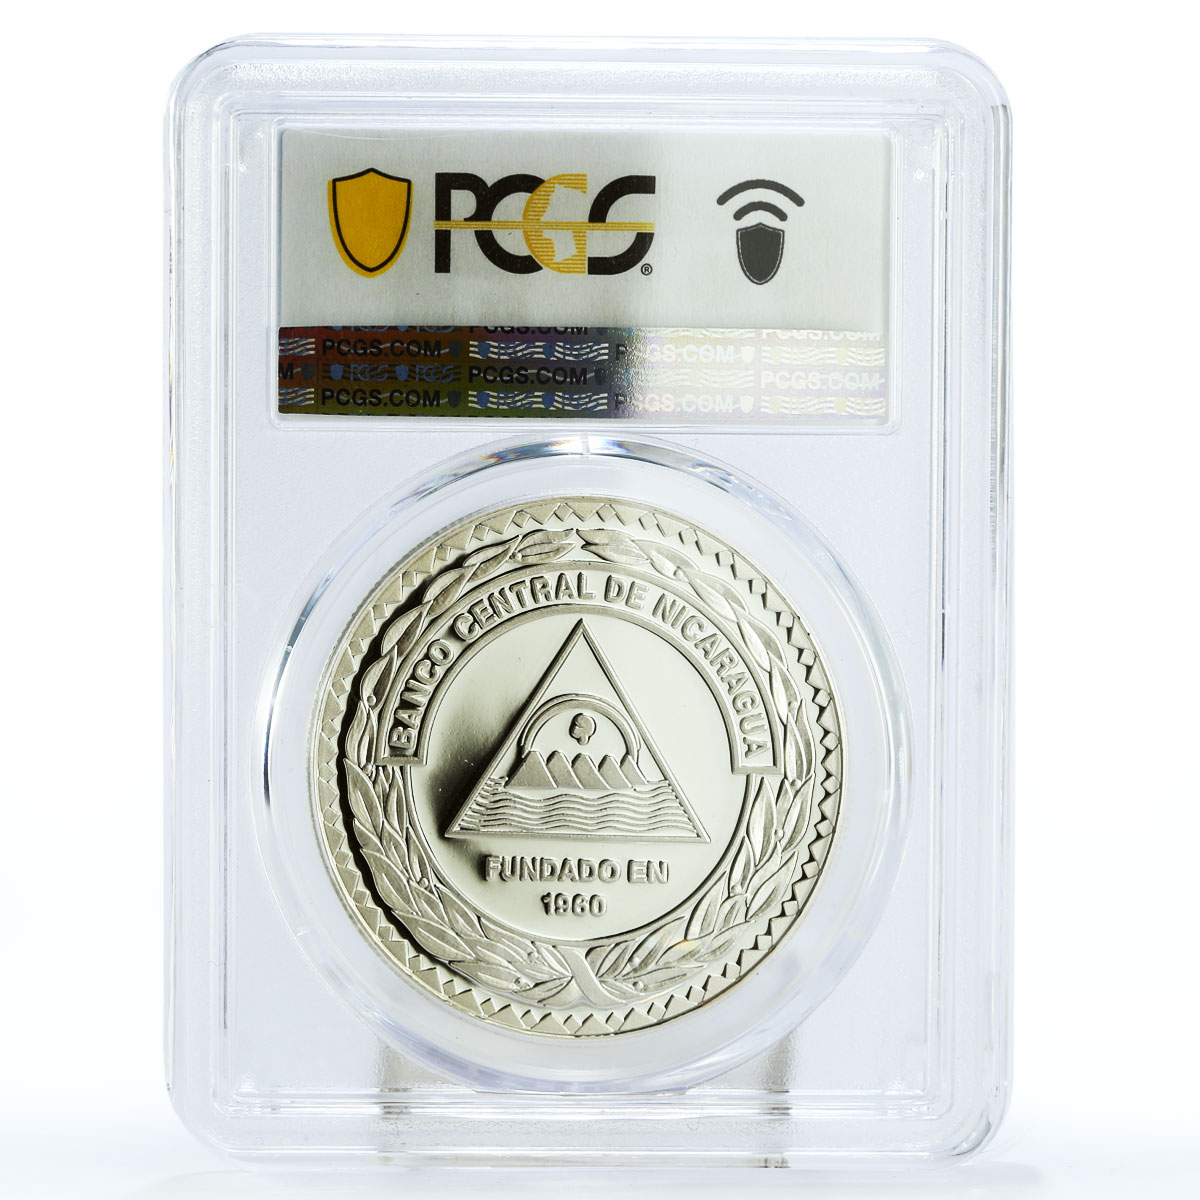 Nicaragua 50 cordobas Central Bank Francisco Cordoba PR69 PCGS silver coin 2000